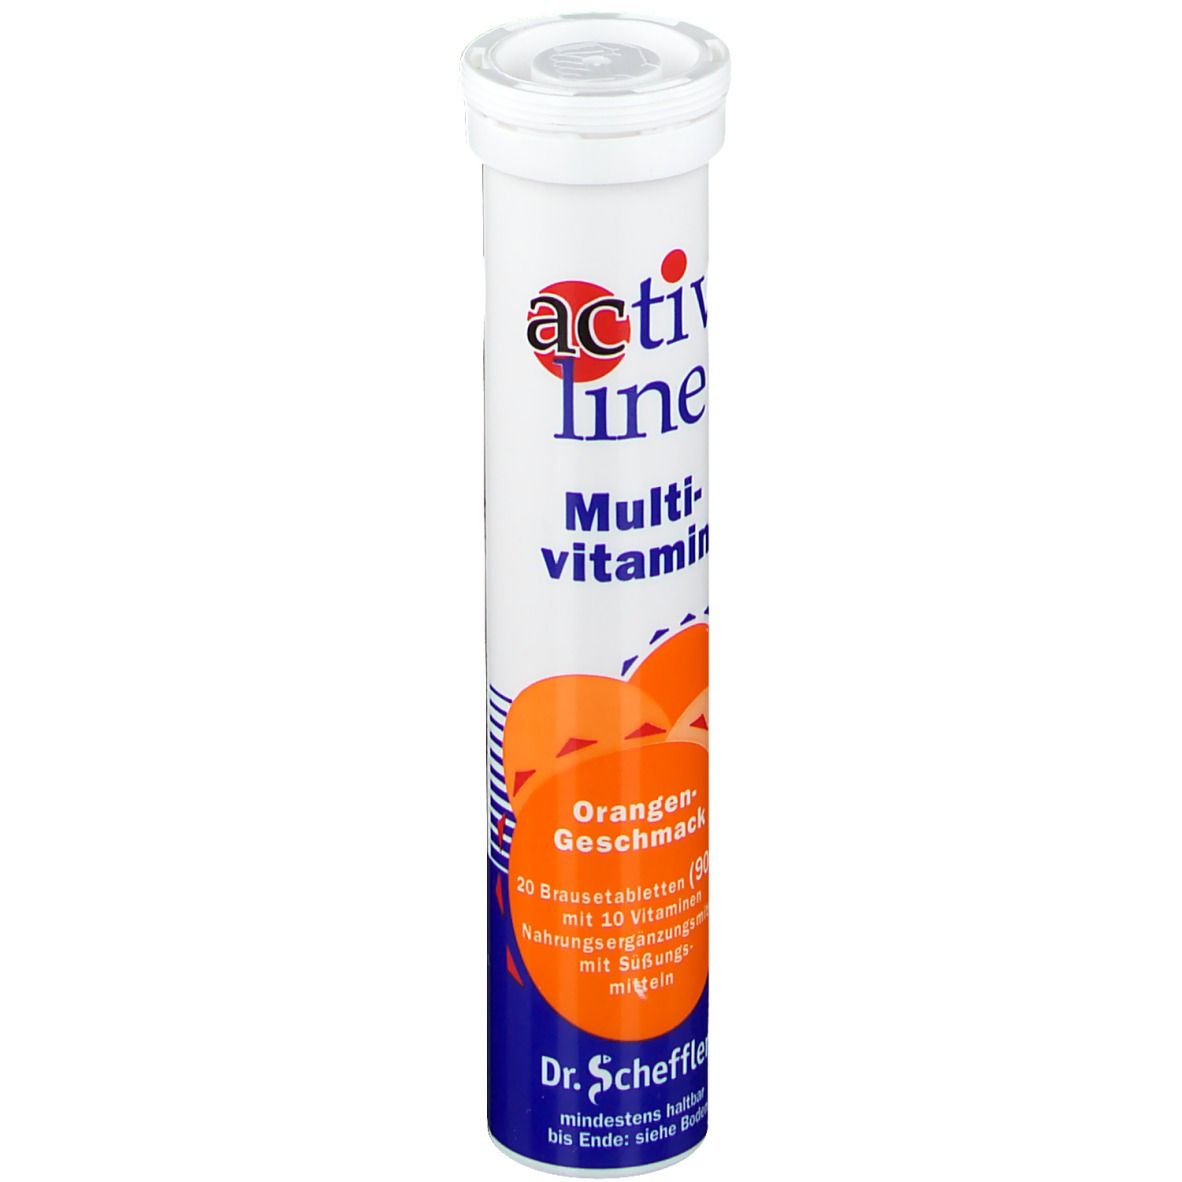   activline Multivitamin Orange